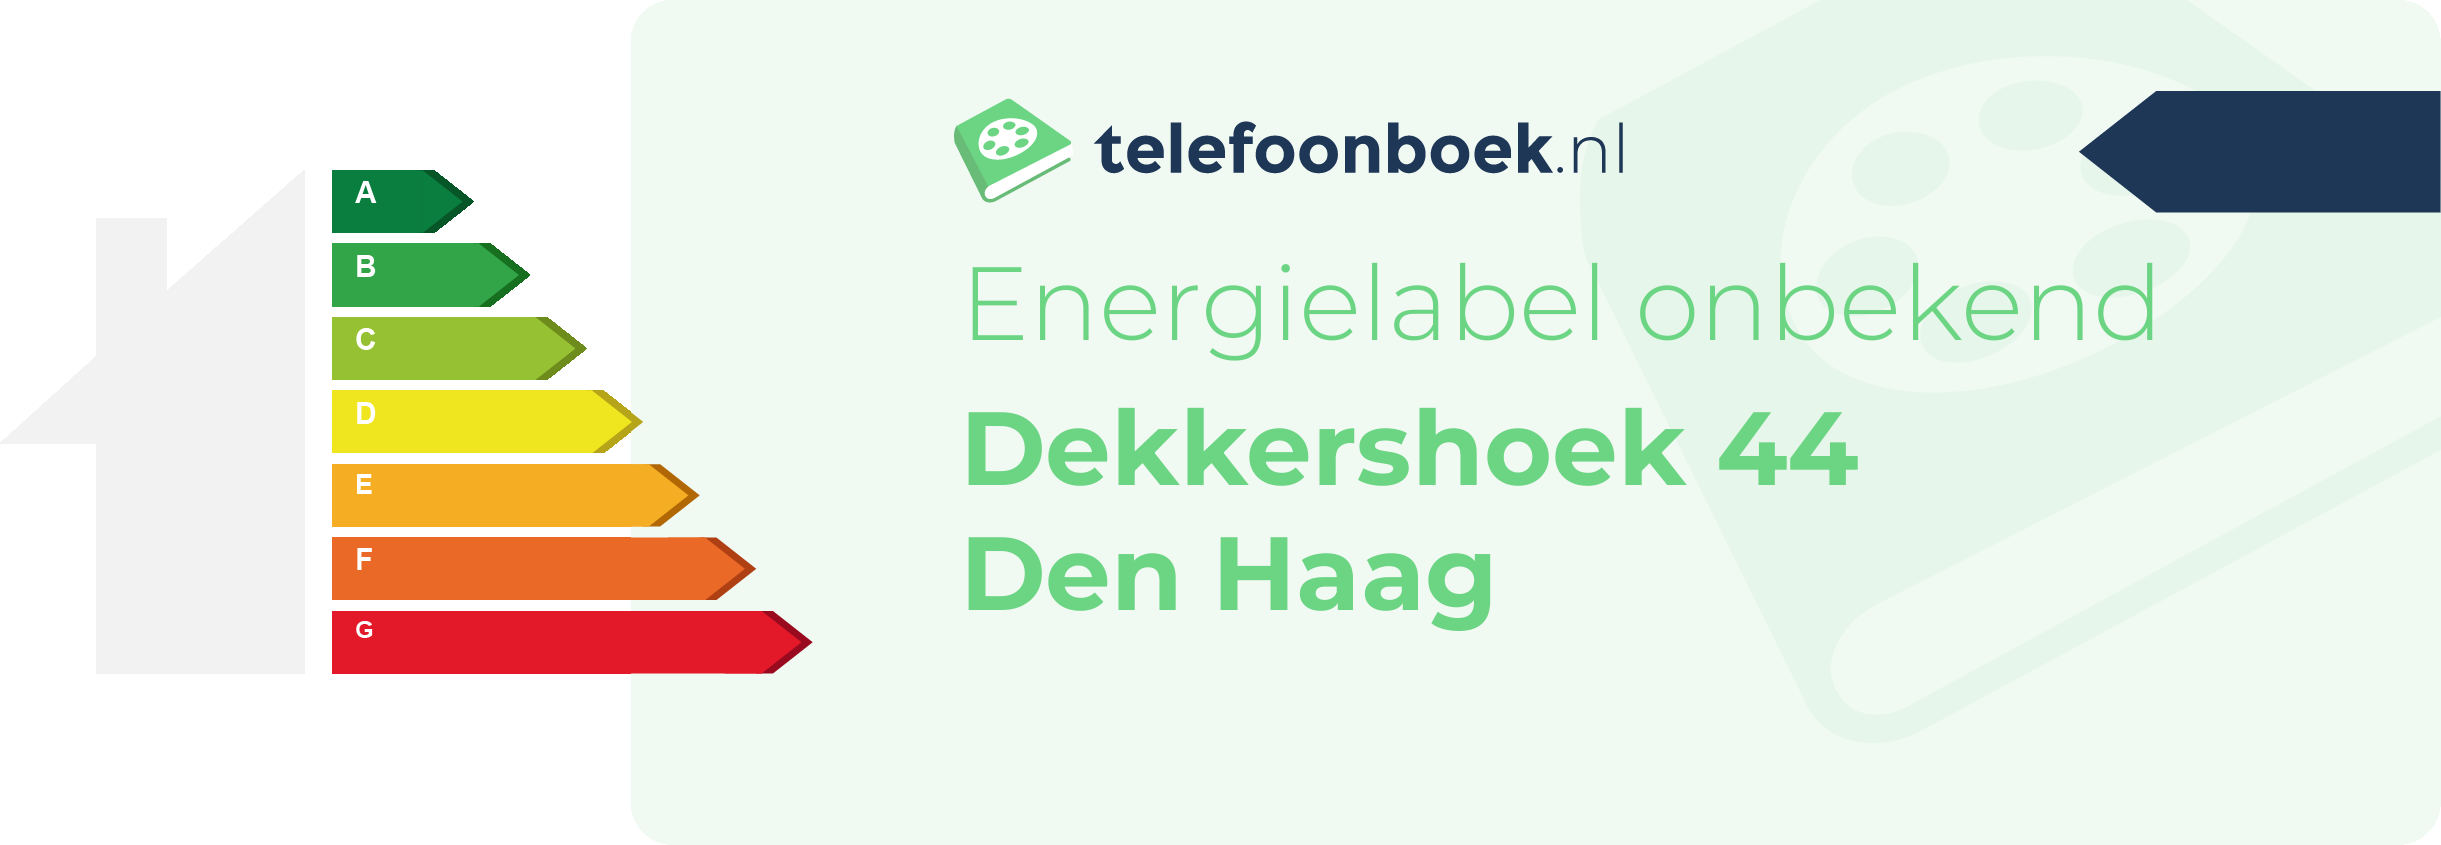 Energielabel Dekkershoek 44 Den Haag